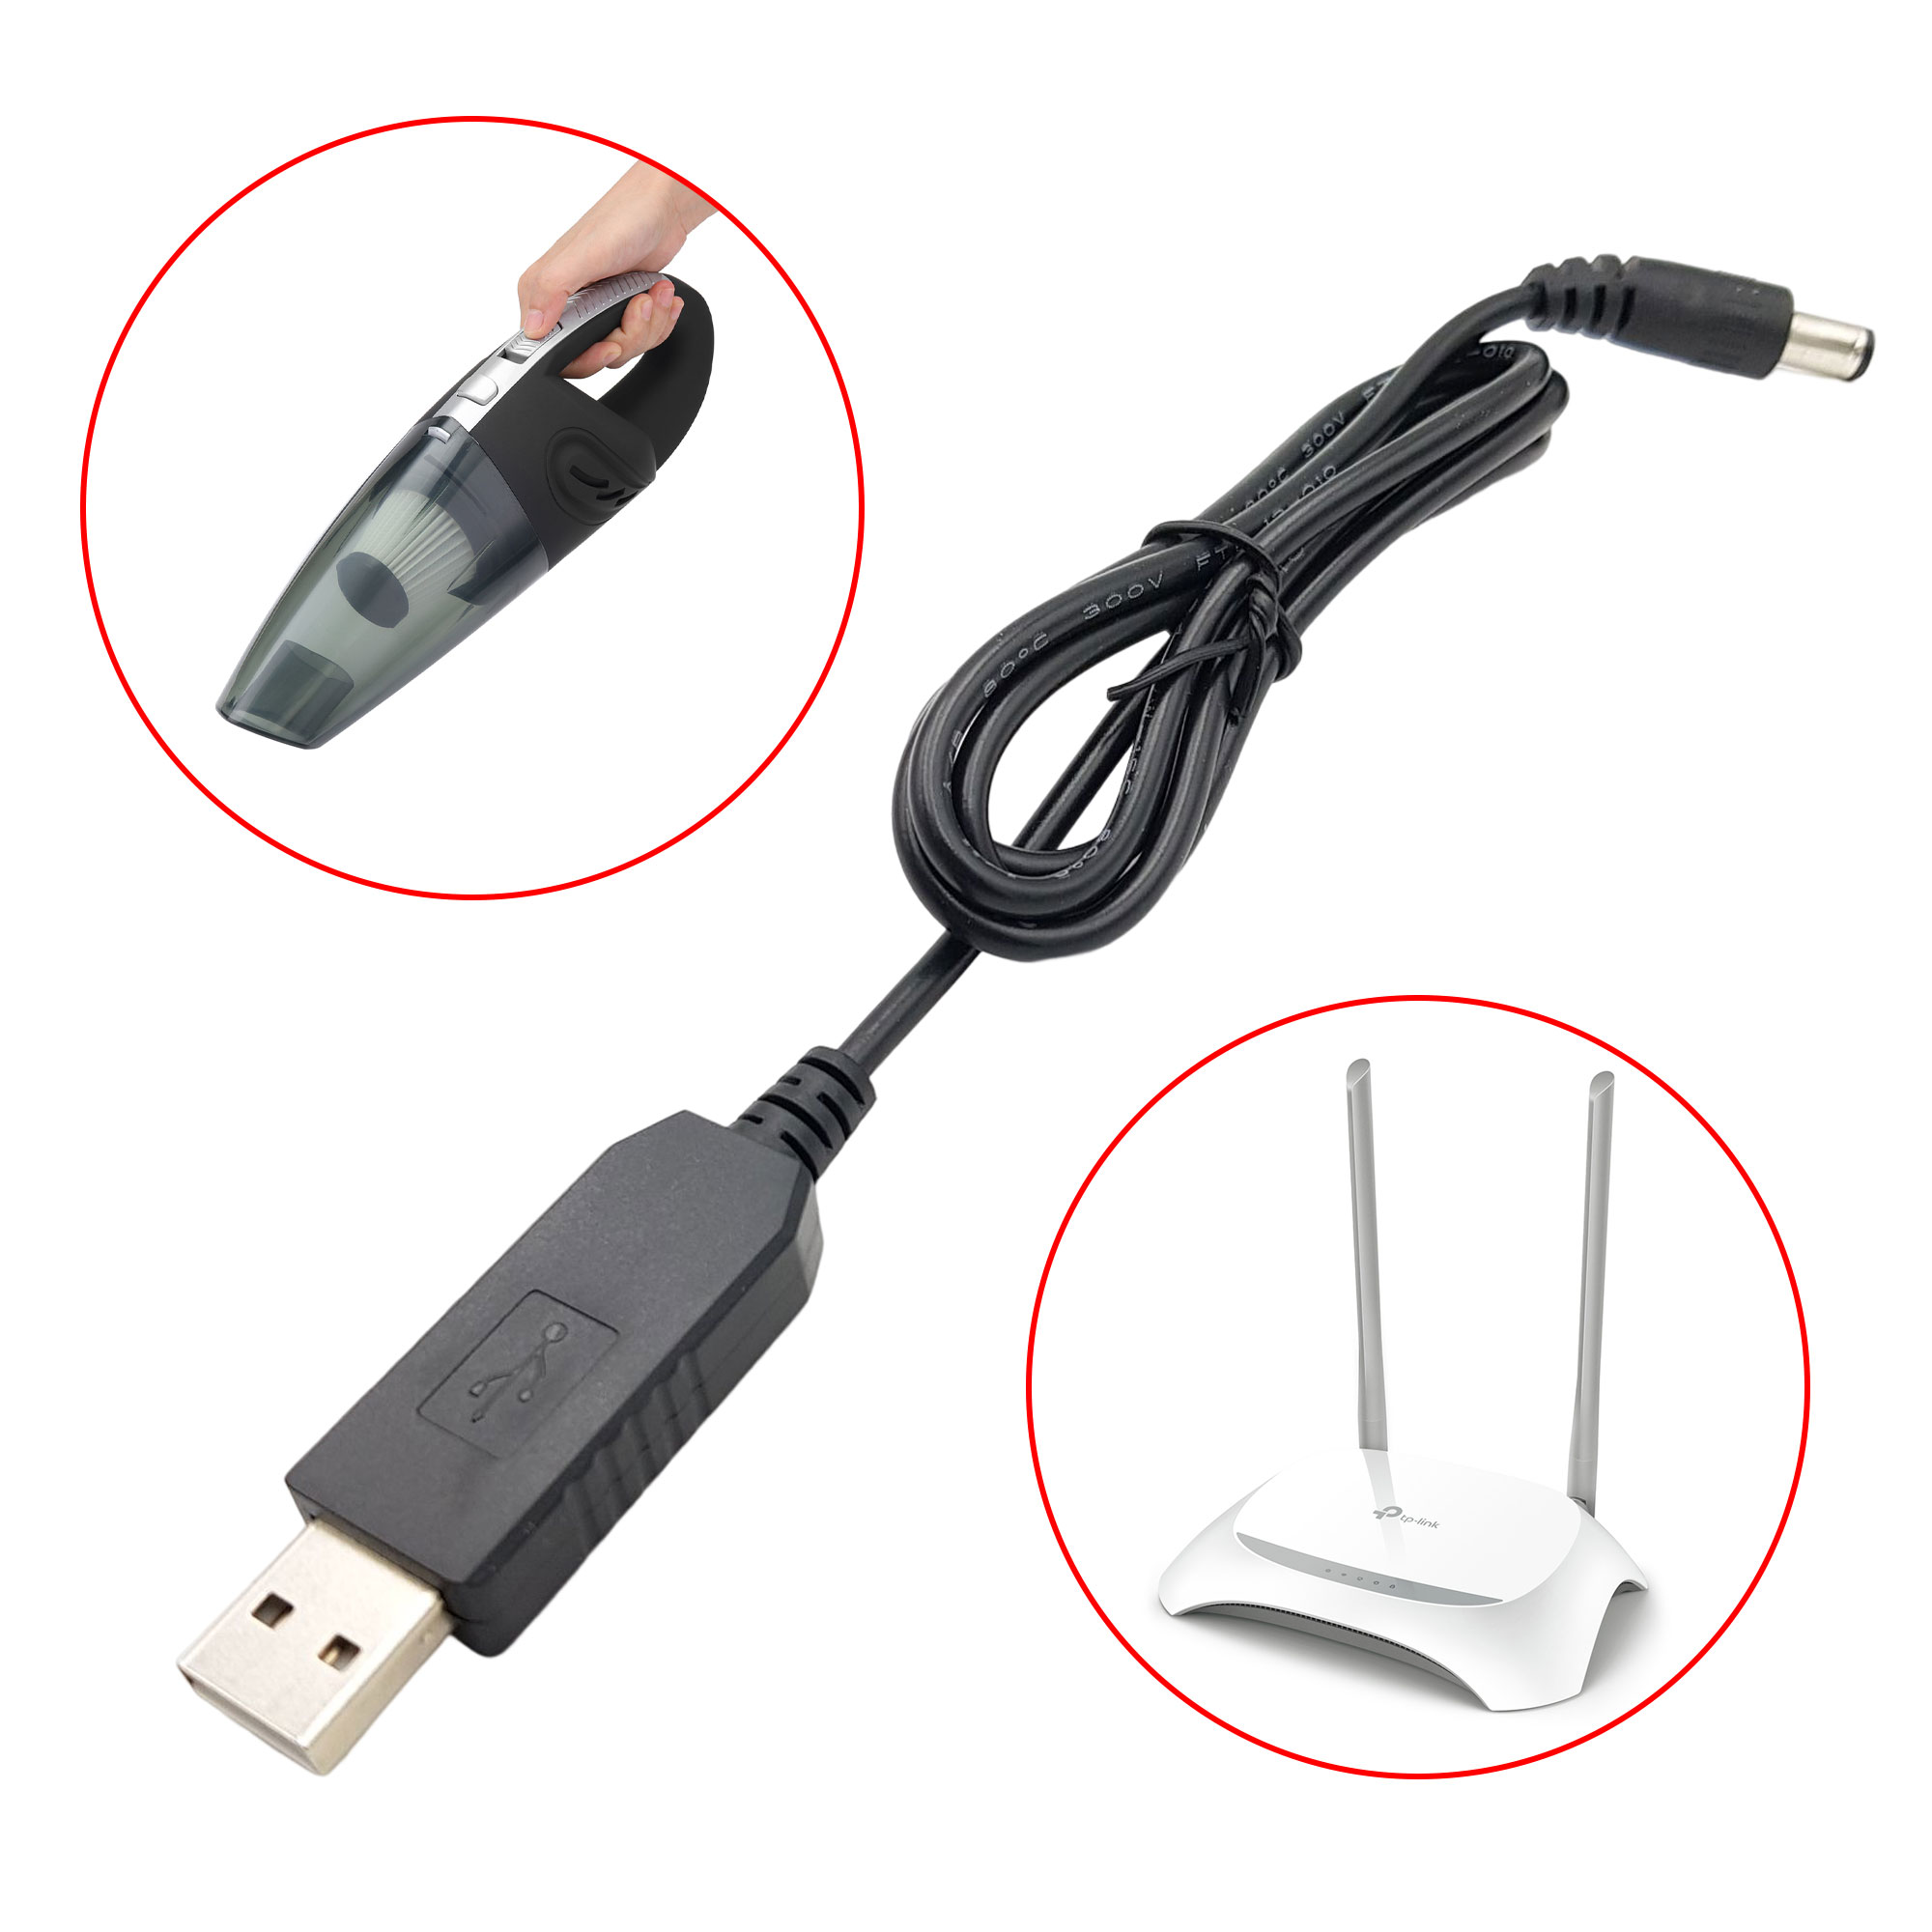 USB tăng áp sạc máy hút bụi, nguồn dự phòng WiFi 9 / 12V